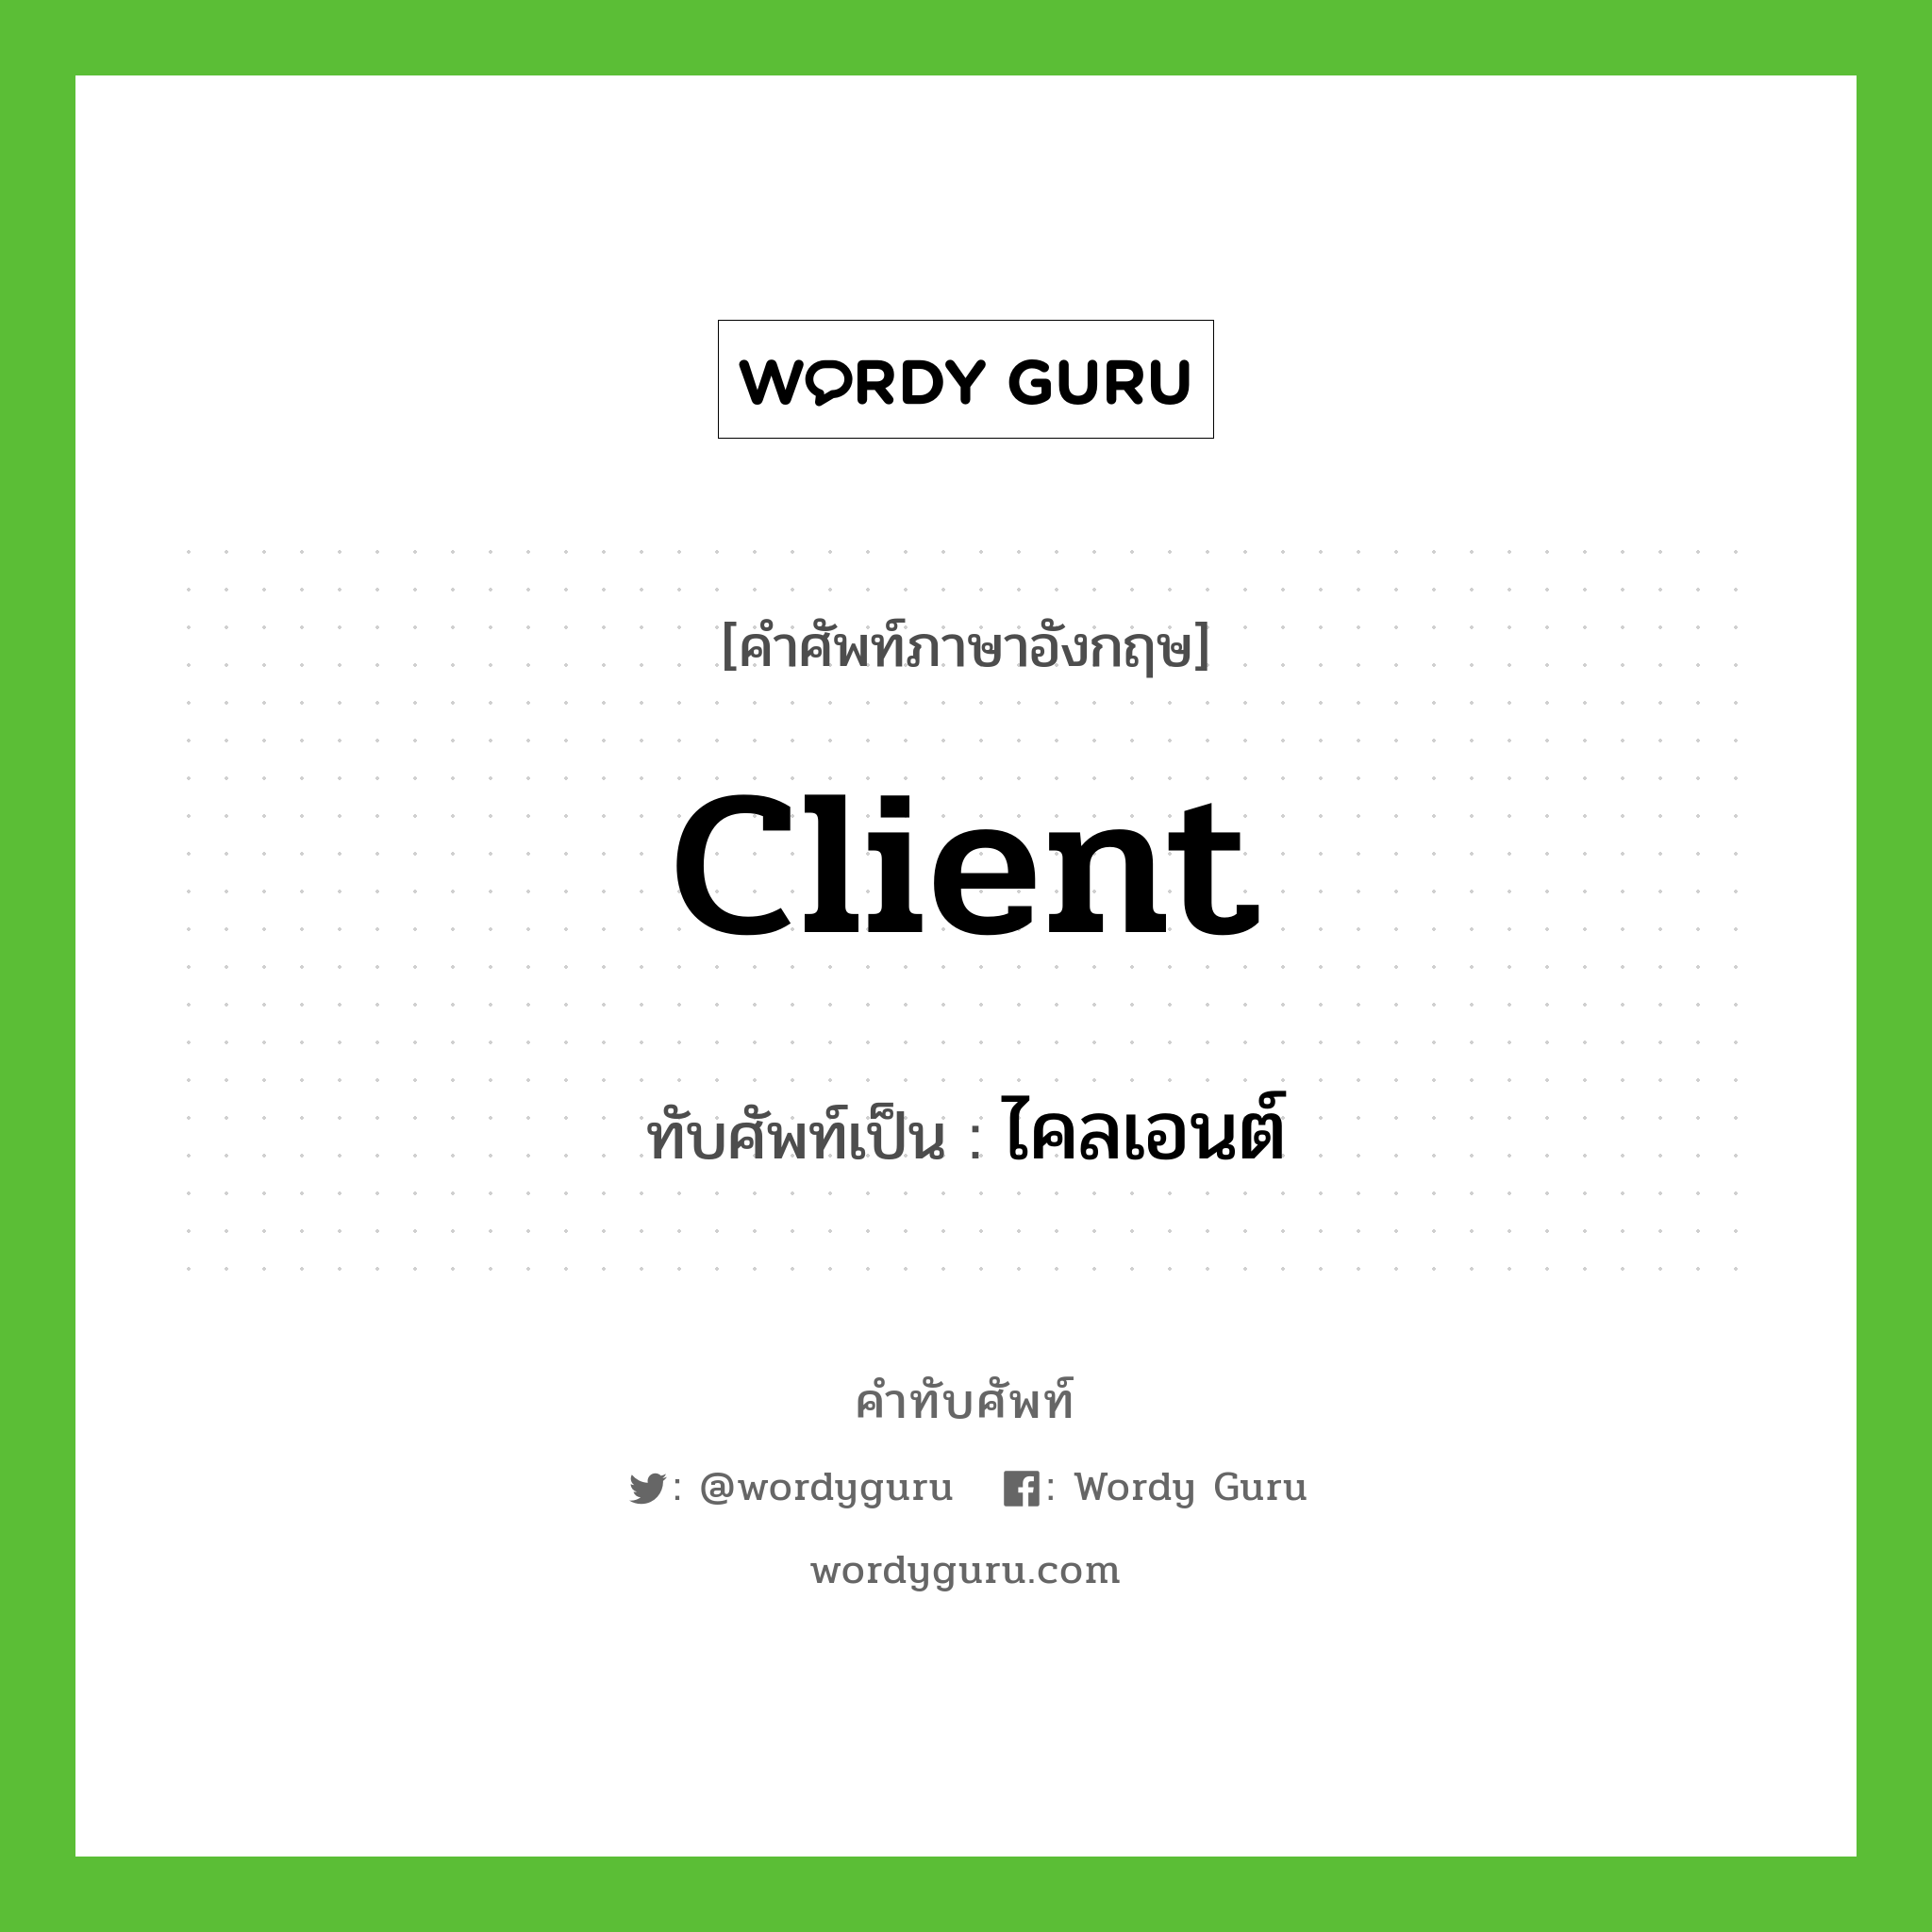 client เขียนเป็นคำไทยว่าอะไร?, คำศัพท์ภาษาอังกฤษ client ทับศัพท์เป็น ไคลเอนต์